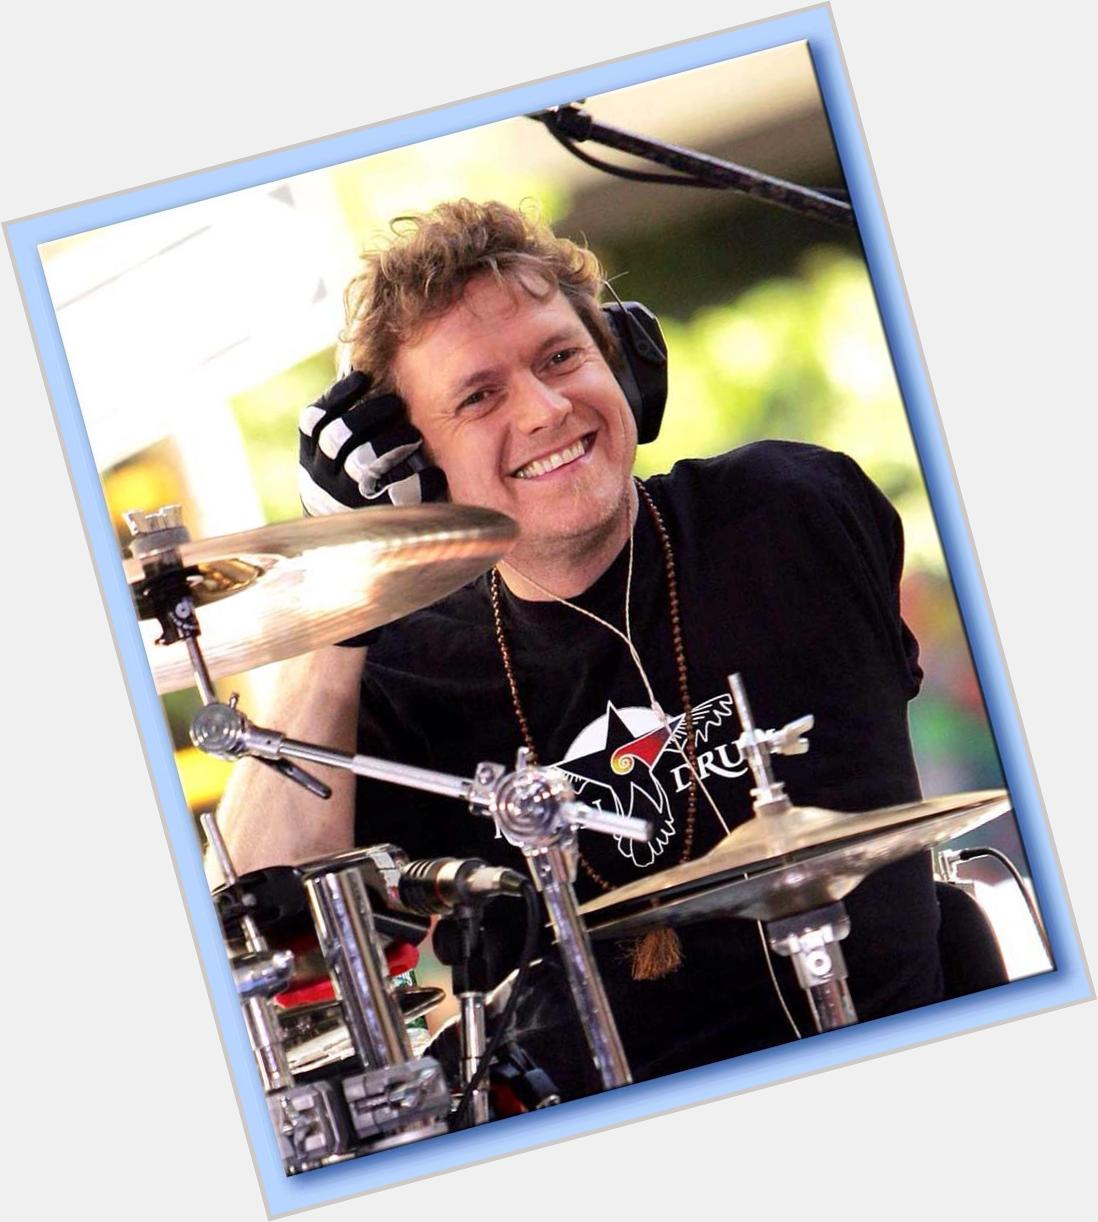 Happy birthday Def Leppard drummer Rick Allen! 